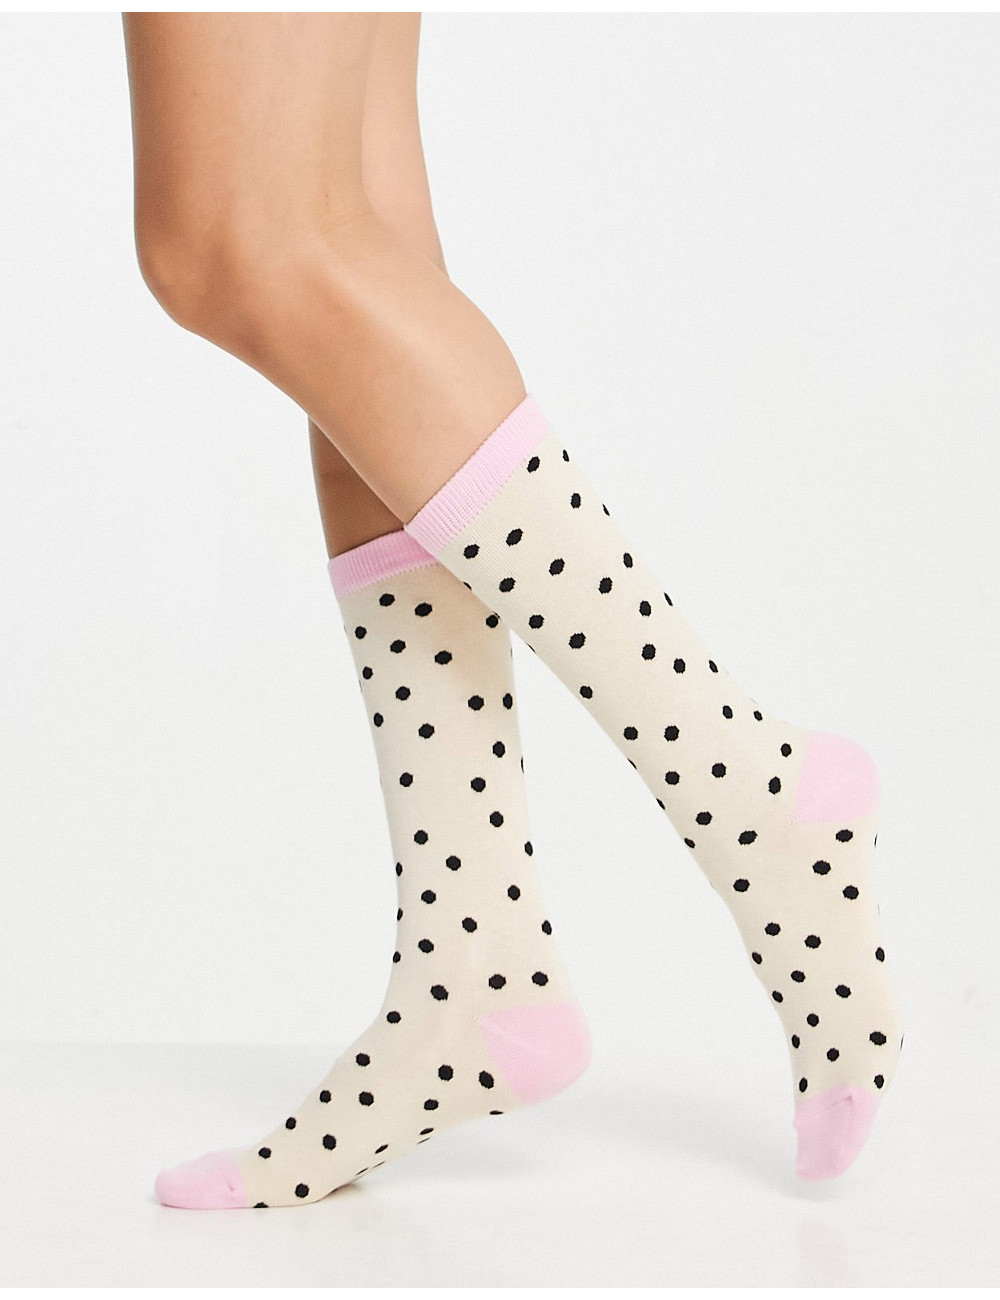 Typo socks in polka dot